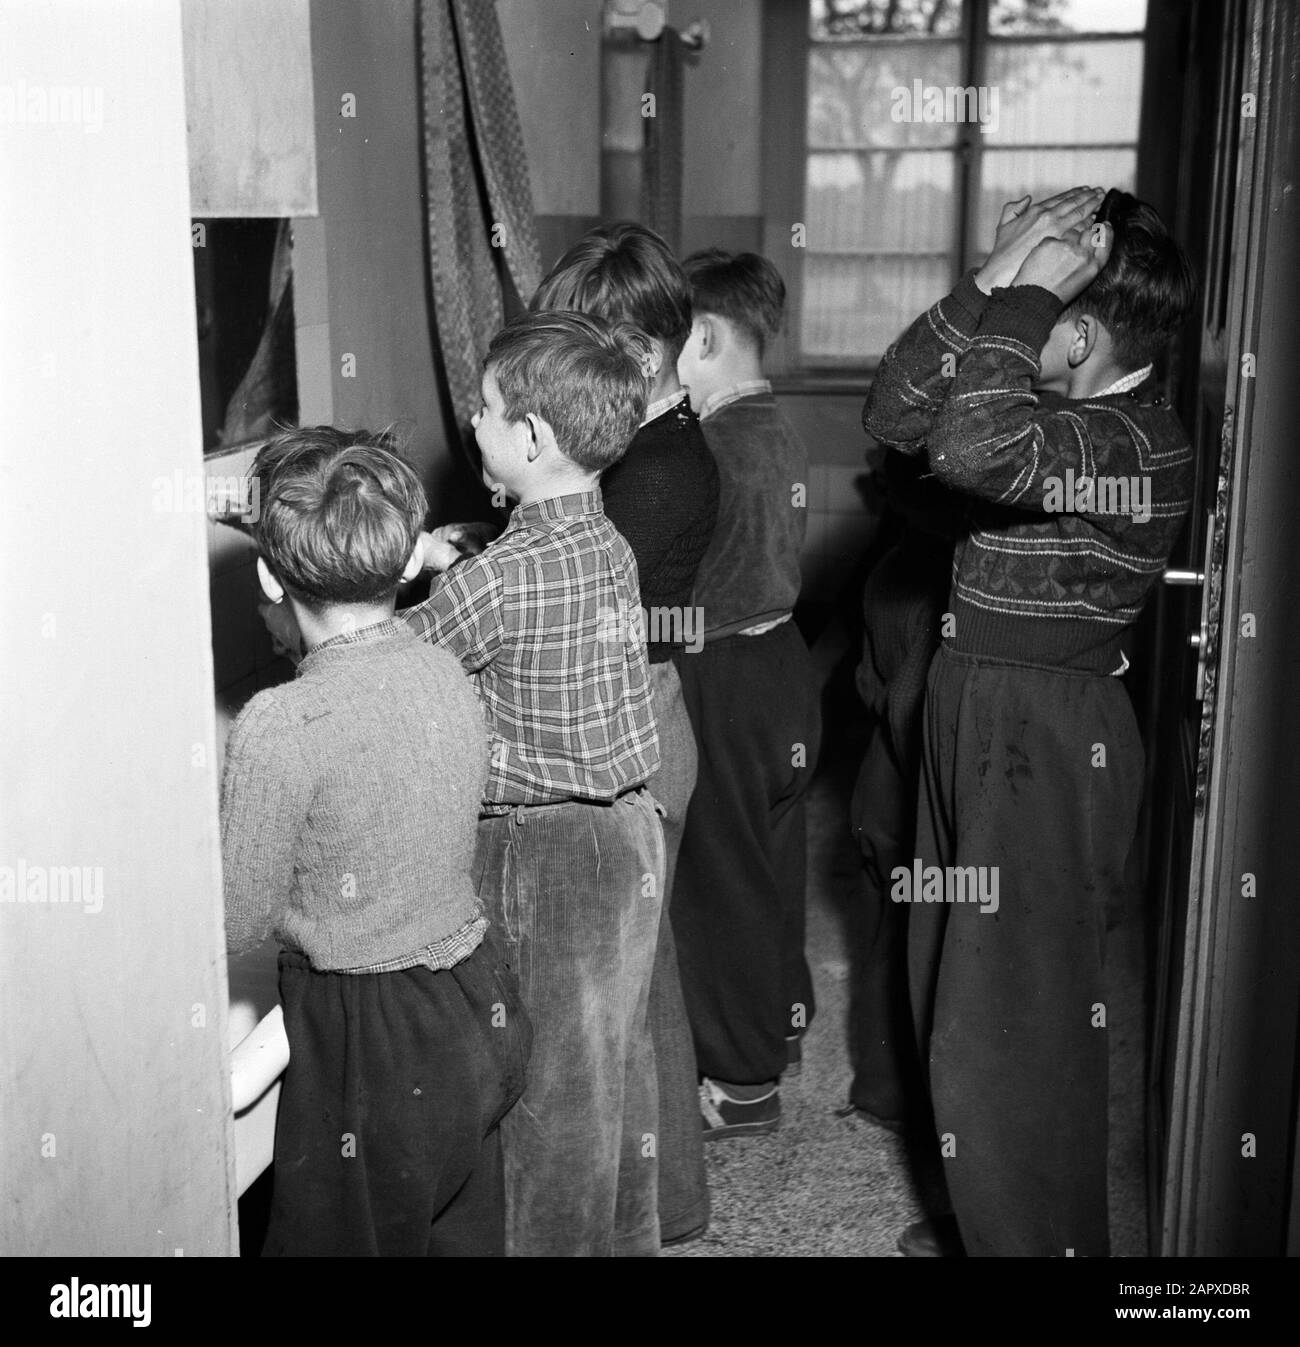 Rhin navigation, rapport sur l'école d'embarquement du navire à Mannheim  les enfants de chaudières se laver les mains et peignent leurs cheveux  avant de manger Date: 1 avril 1955 lieu: Allemagne, Mannheim,